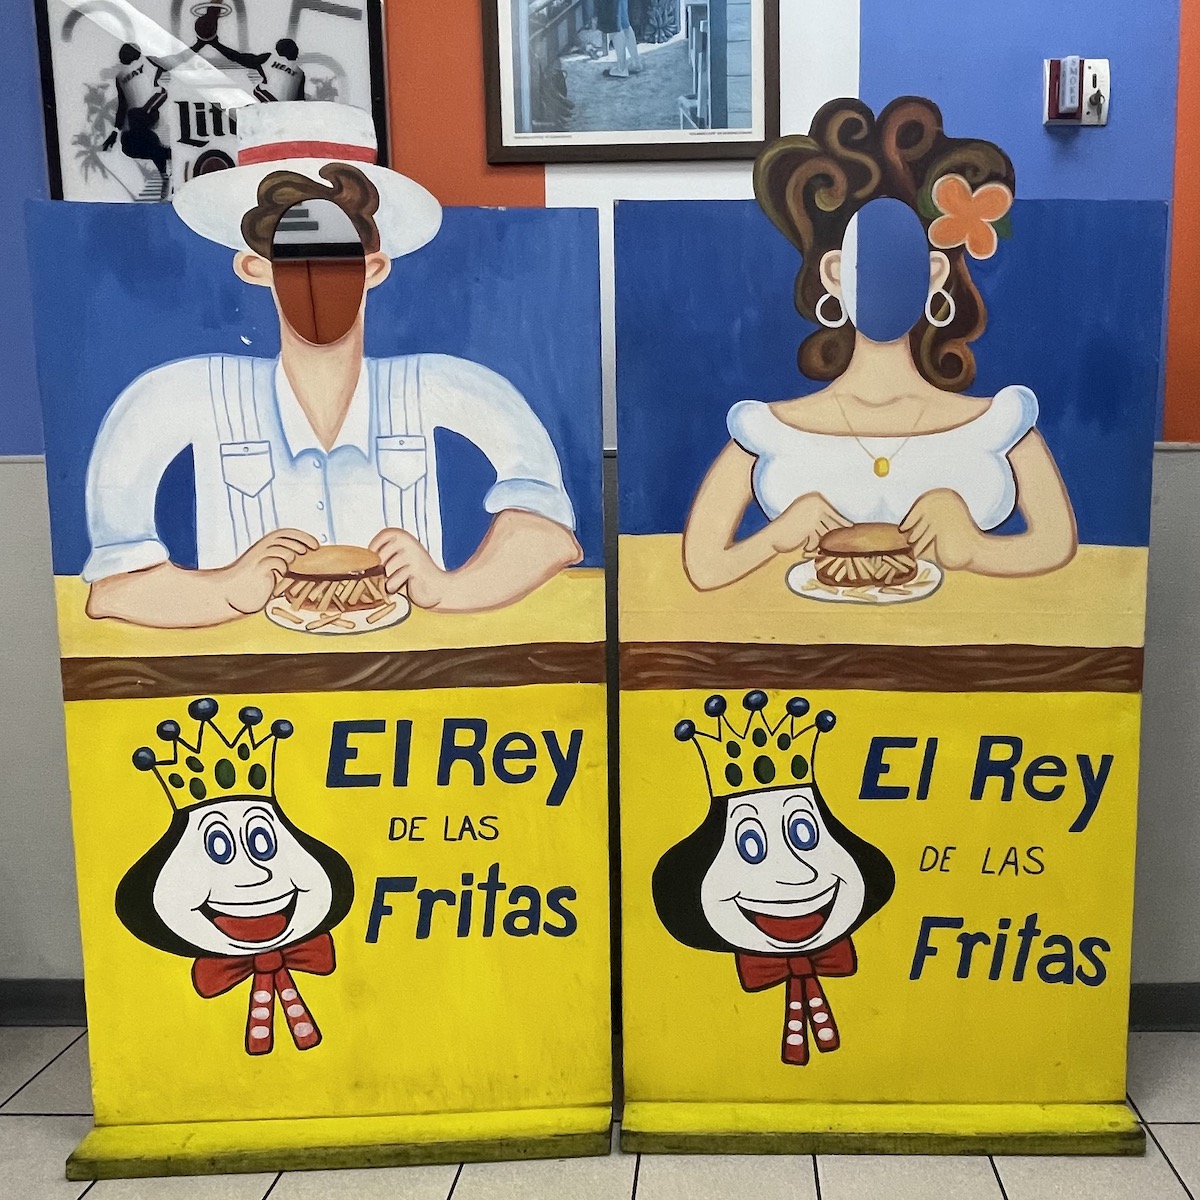 Photo Opportunity at El Rey de las Fritas in Little Havana, Florida